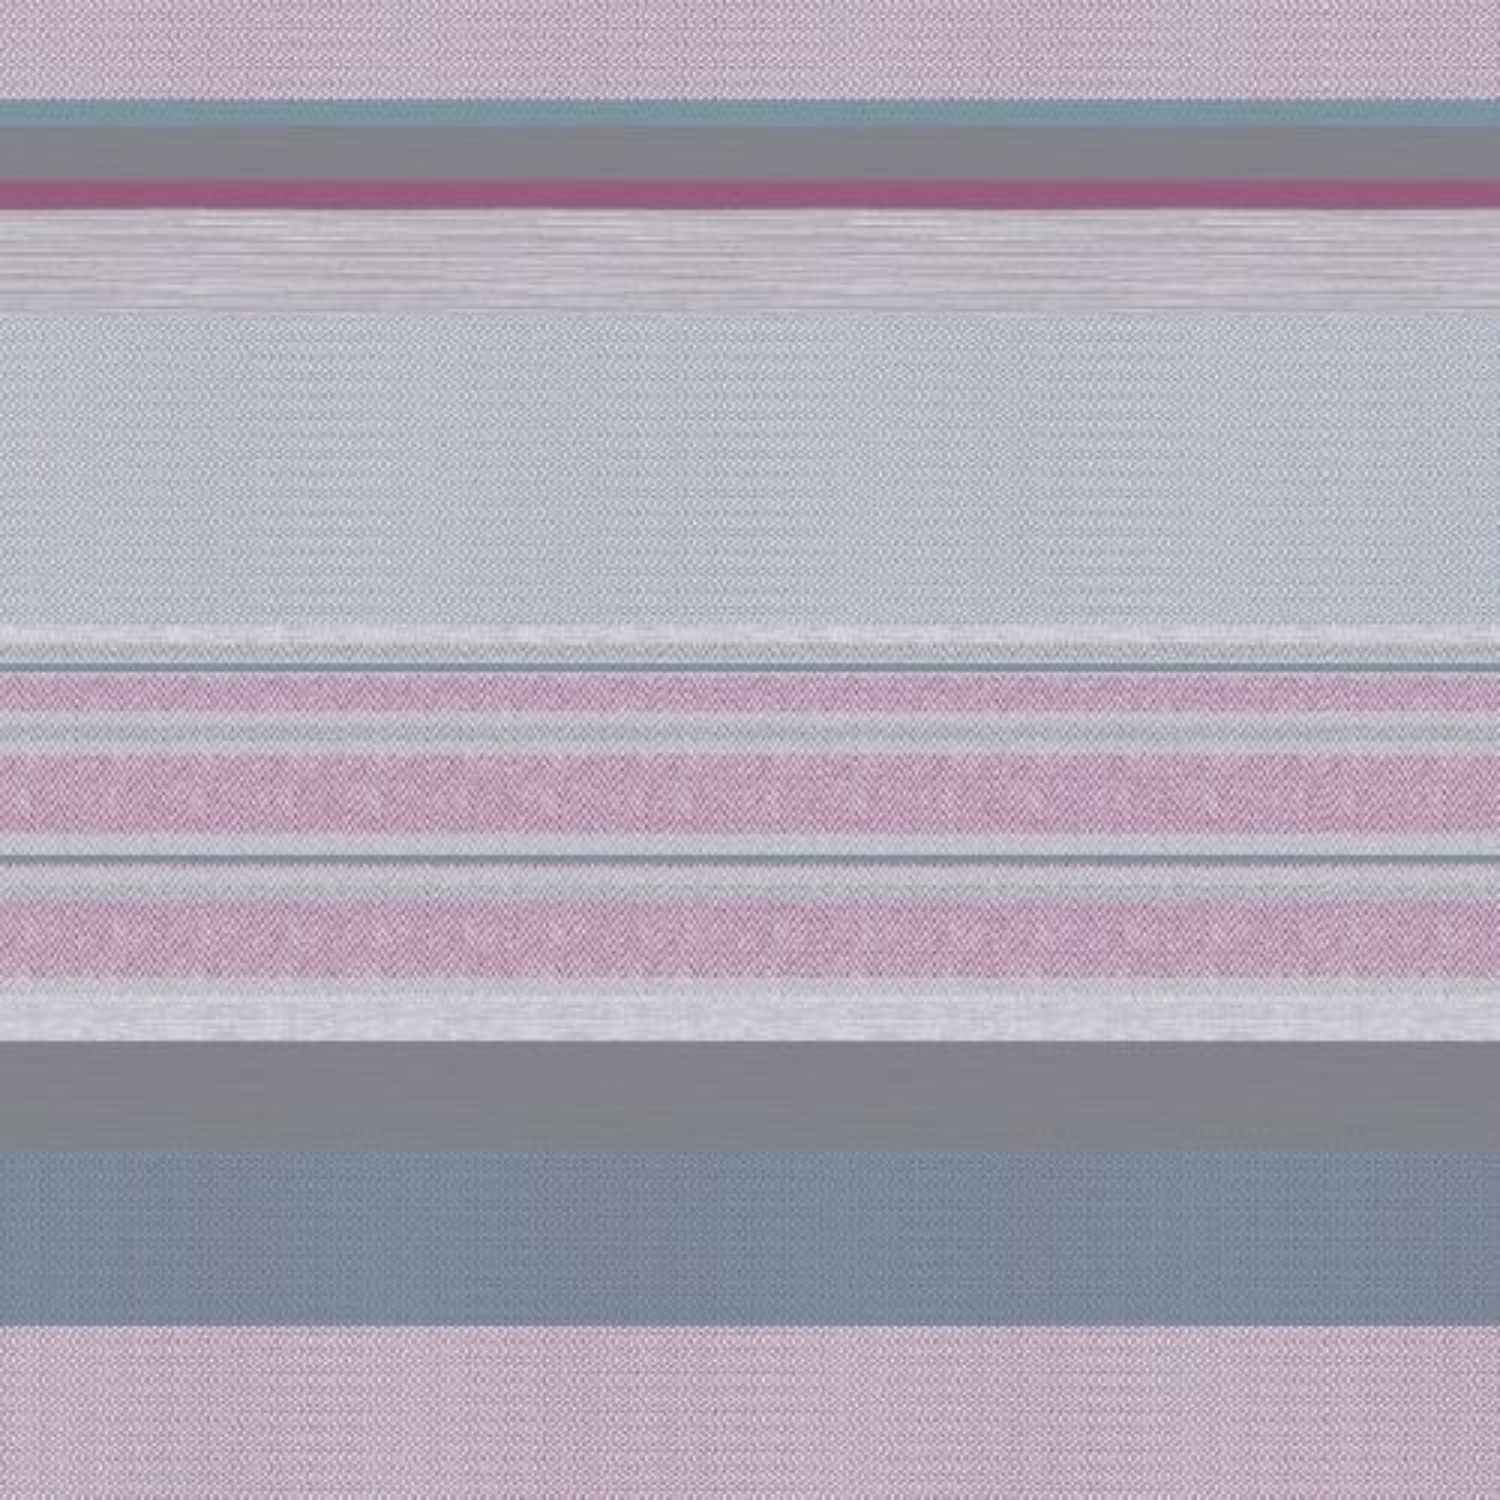 greca-rosa-telo-arredo-copritutto-tuttofare-geometrico-azzurro-grigio-rosa-fuxia-bianco-classico-moderno-pattern